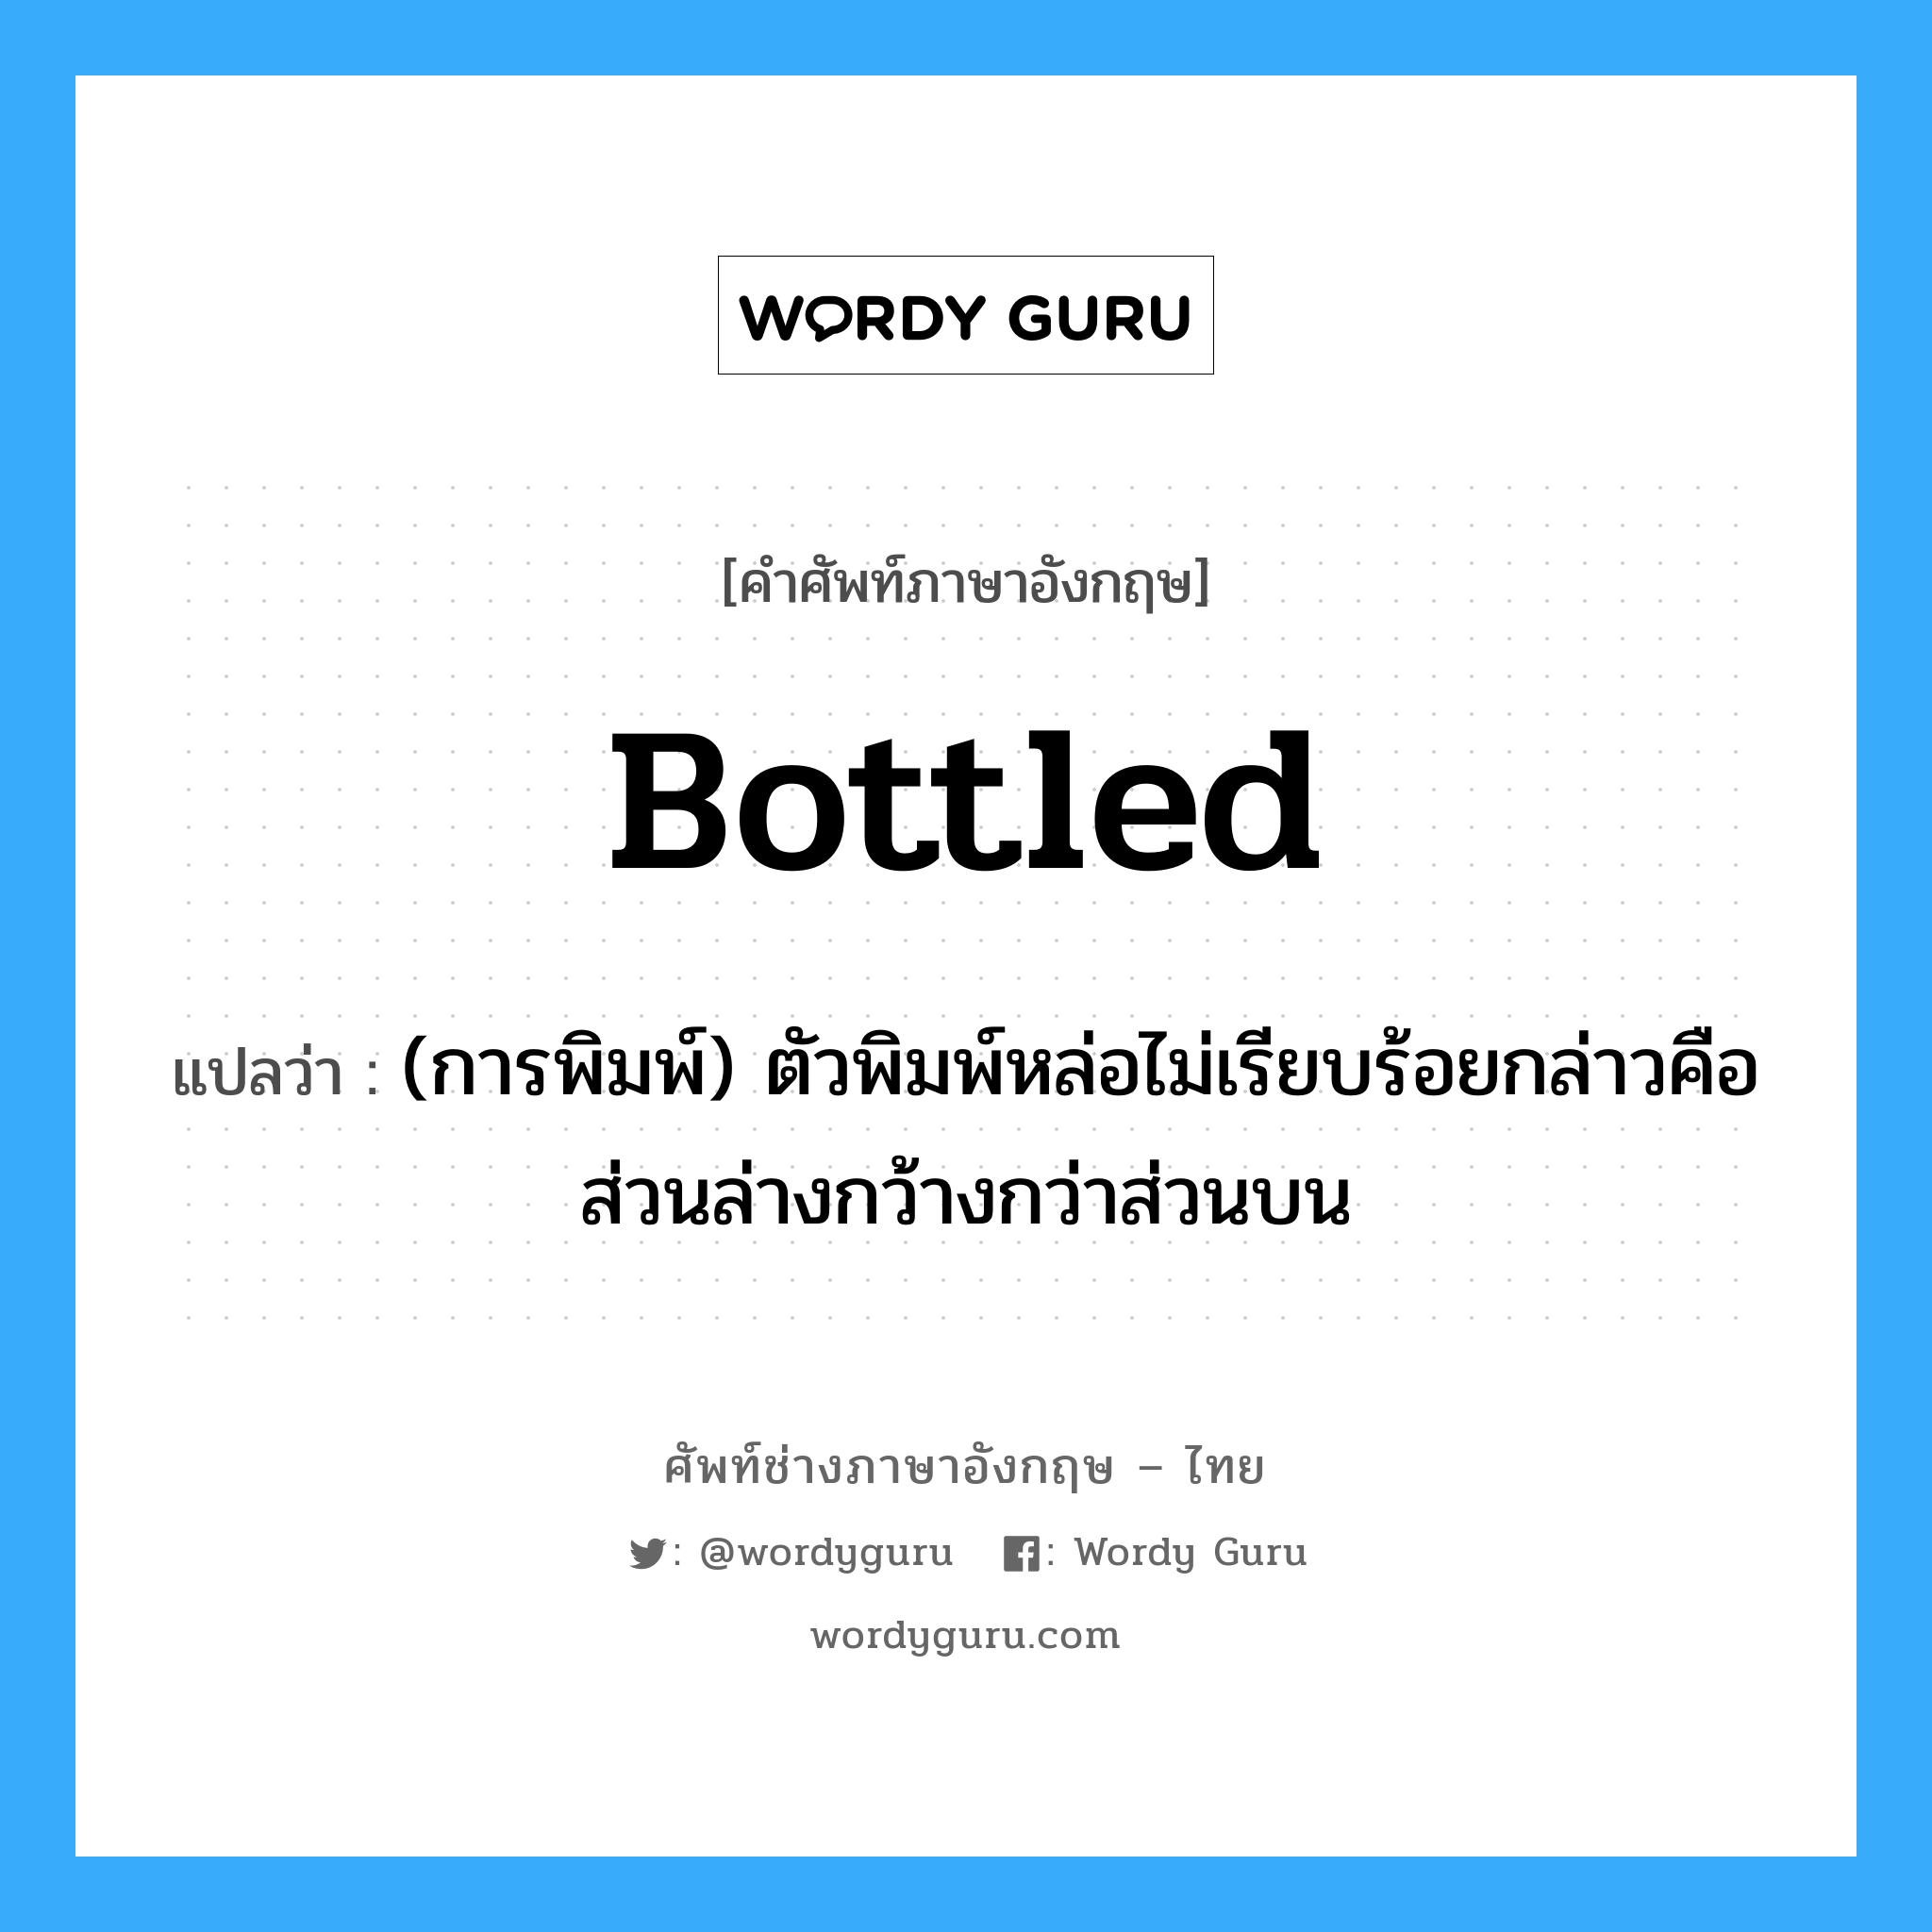 bottled แปลว่า?, คำศัพท์ช่างภาษาอังกฤษ - ไทย bottled คำศัพท์ภาษาอังกฤษ bottled แปลว่า (การพิมพ์) ตัวพิมพ์หล่อไม่เรียบร้อยกล่าวคือส่วนล่างกว้างกว่าส่วนบน